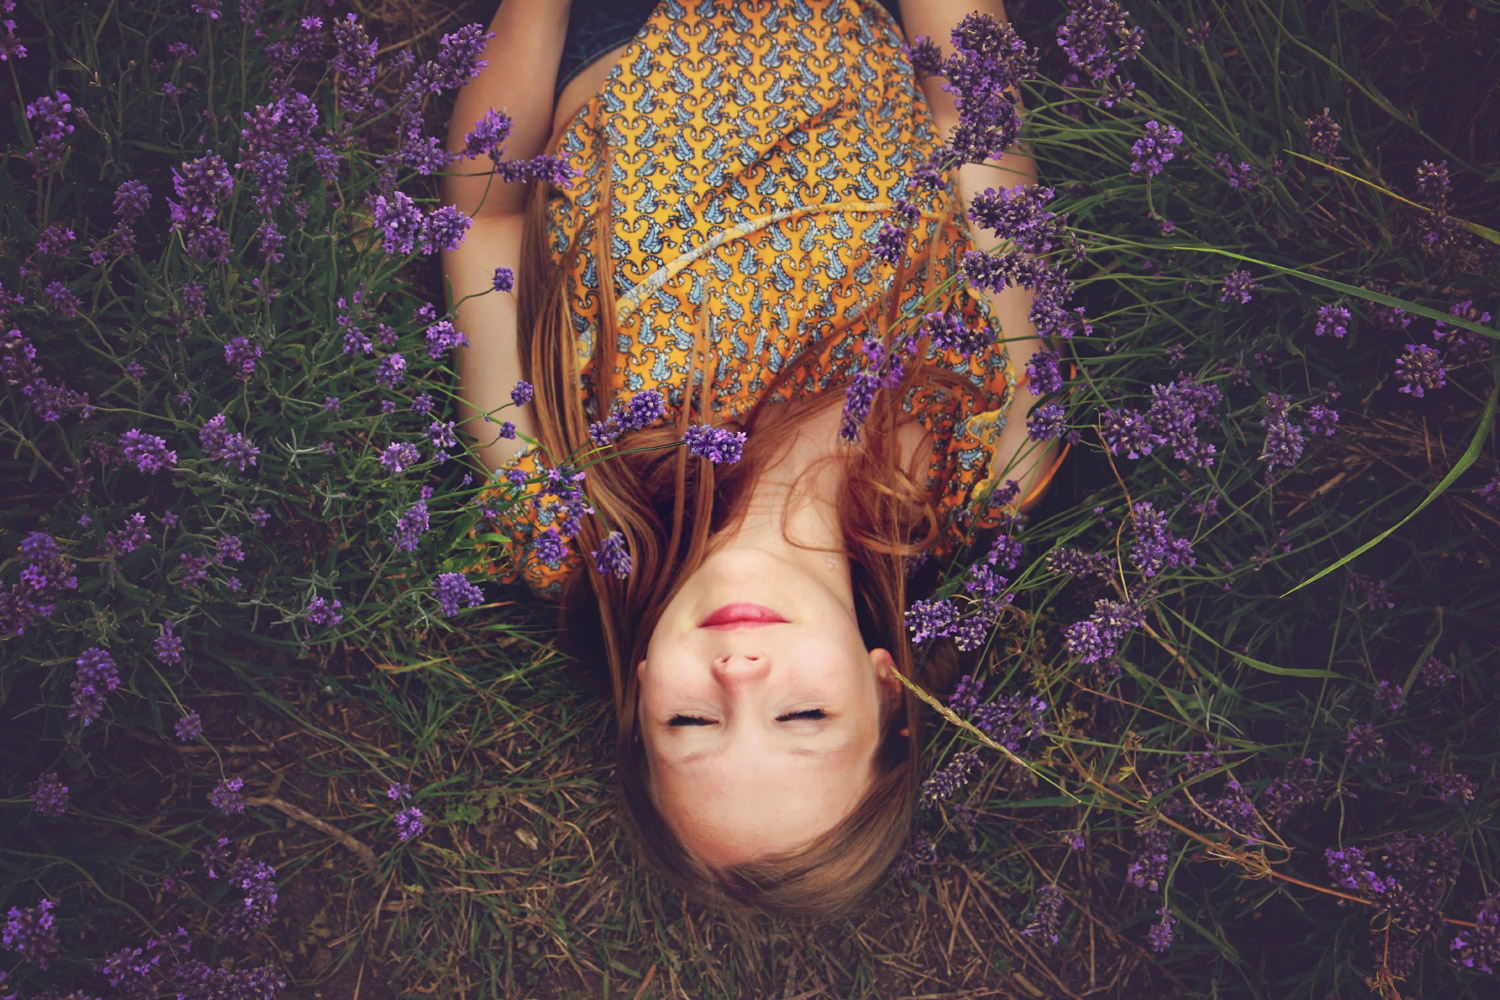 Woman sleeping in flower field insomnia